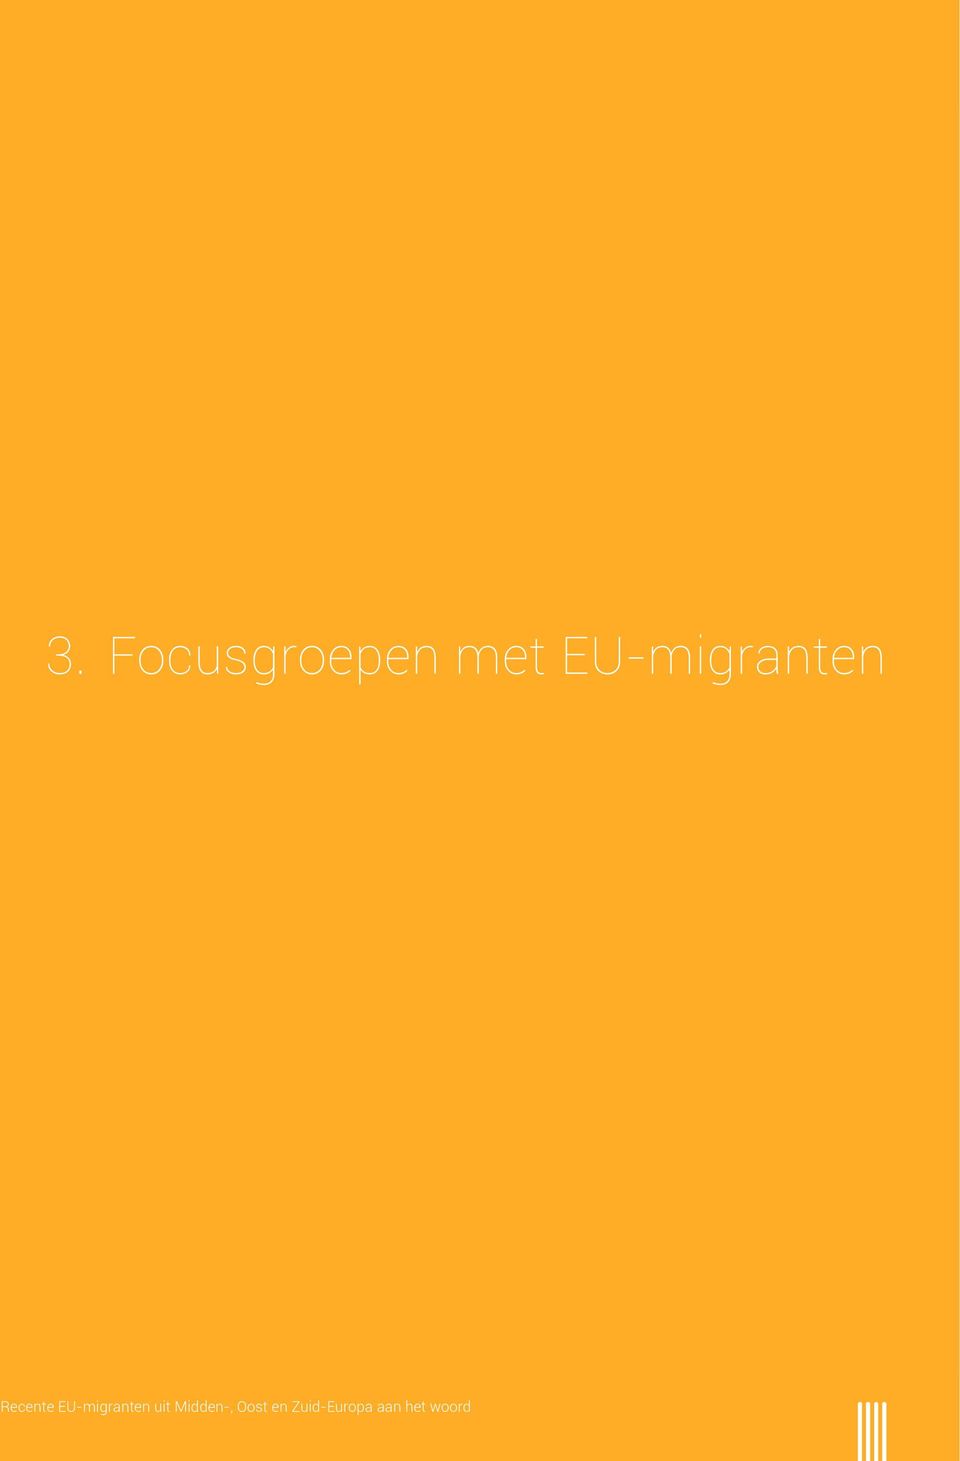 EU-migranten uit Midden-,